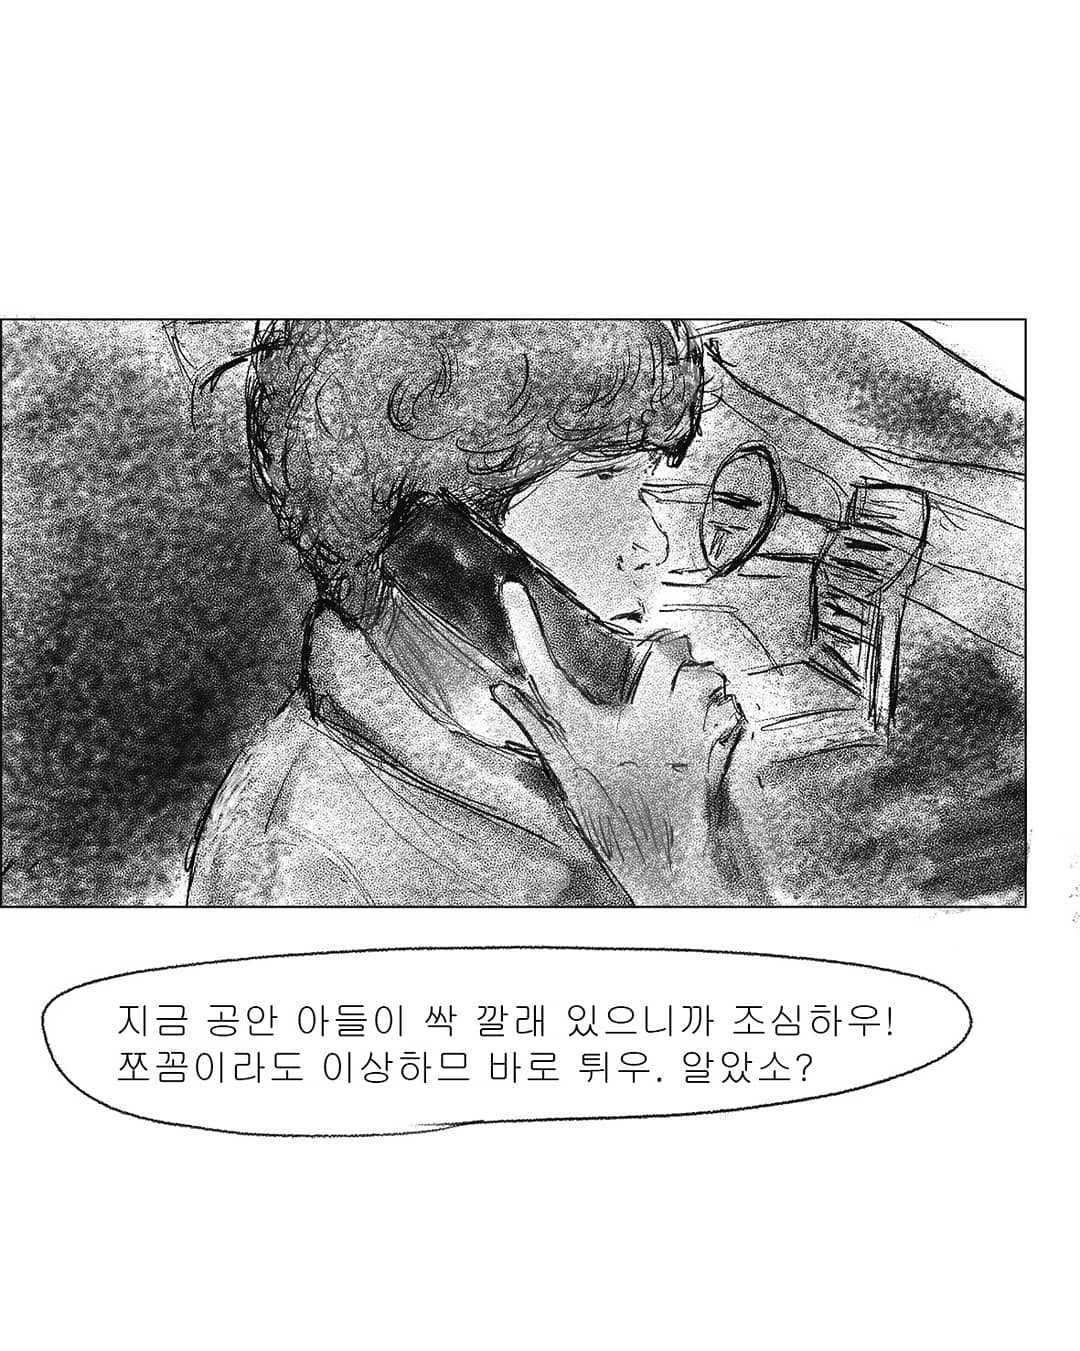 2019년도 인스타툰 '안까이' 장면 03